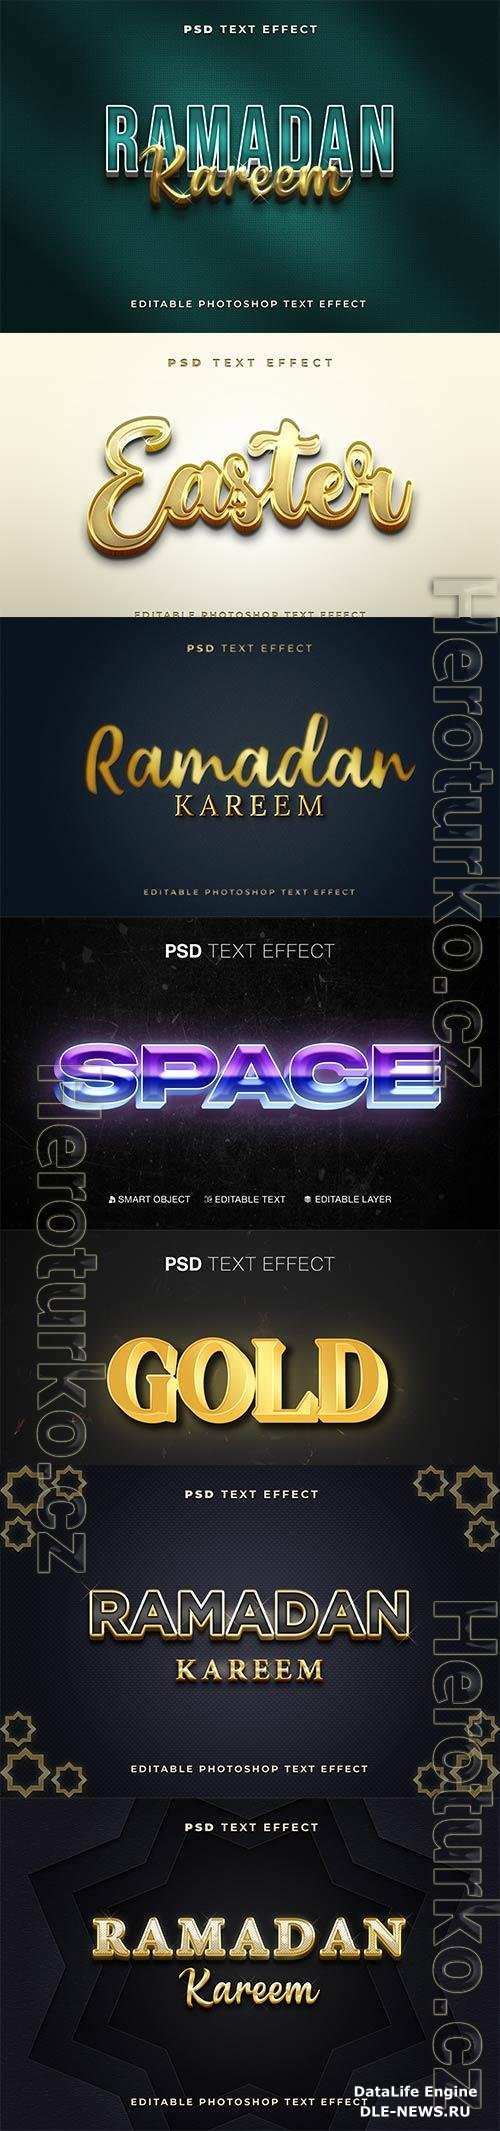 Psd text effect set vol 177